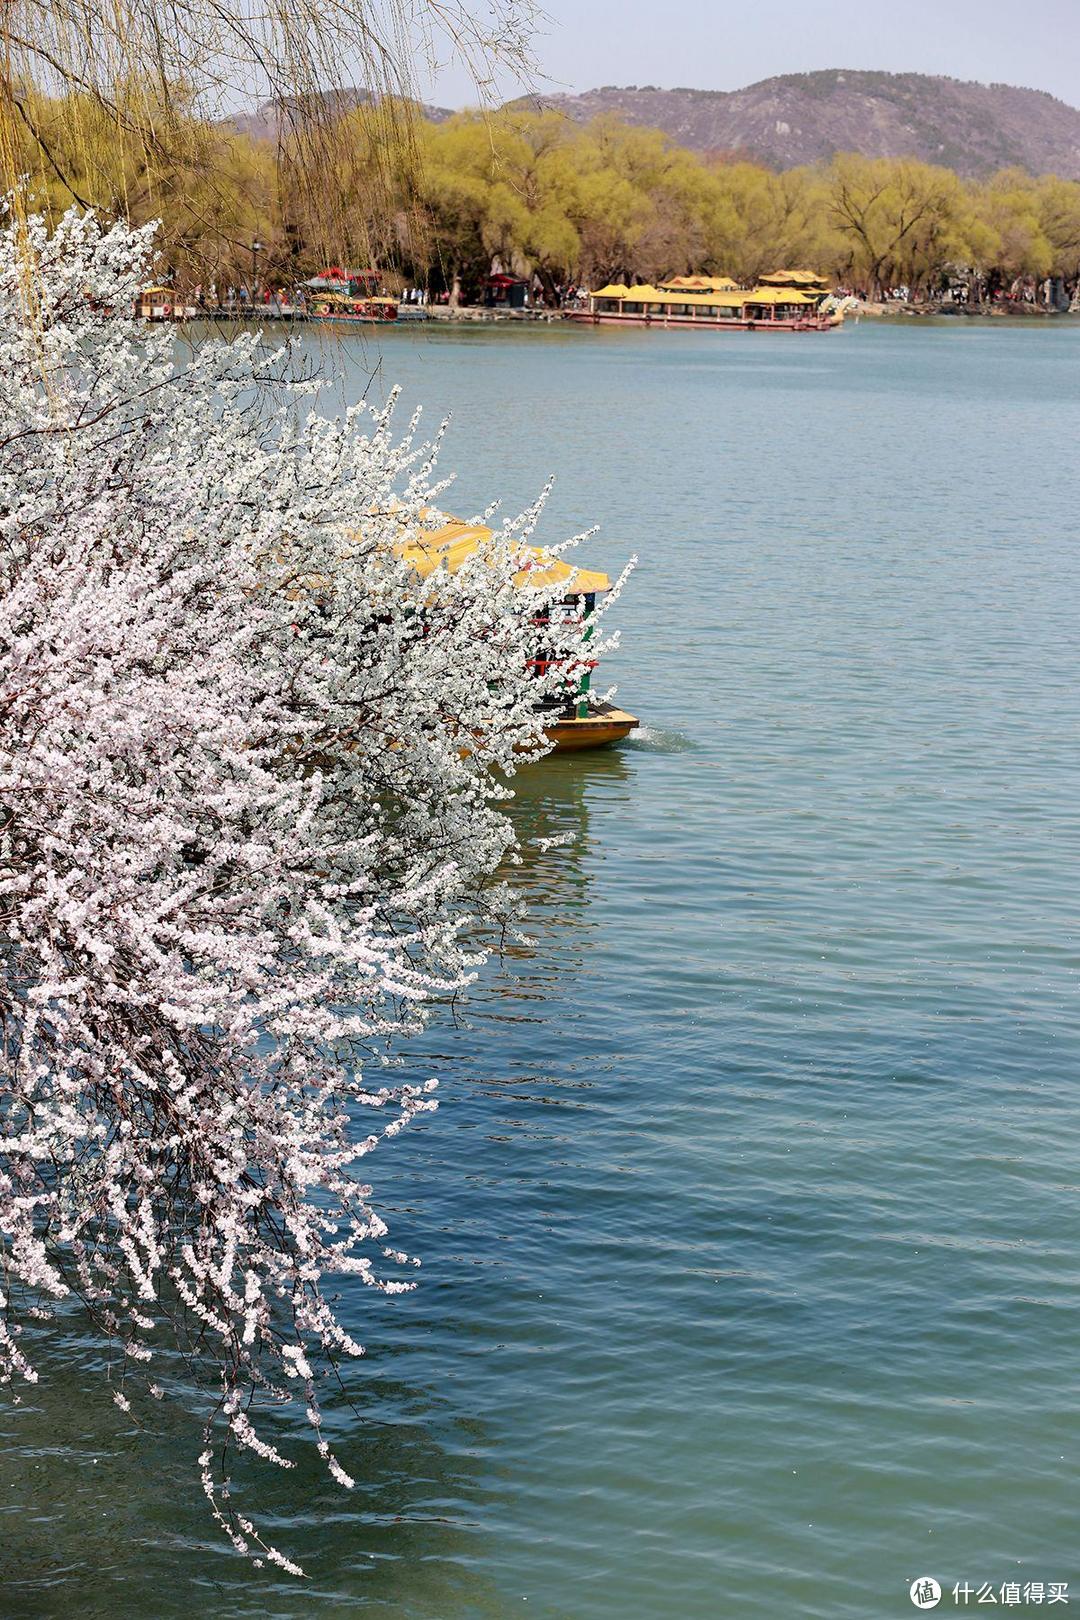 一镜走天下，春天的颐和园西堤是外景拍摄的首选